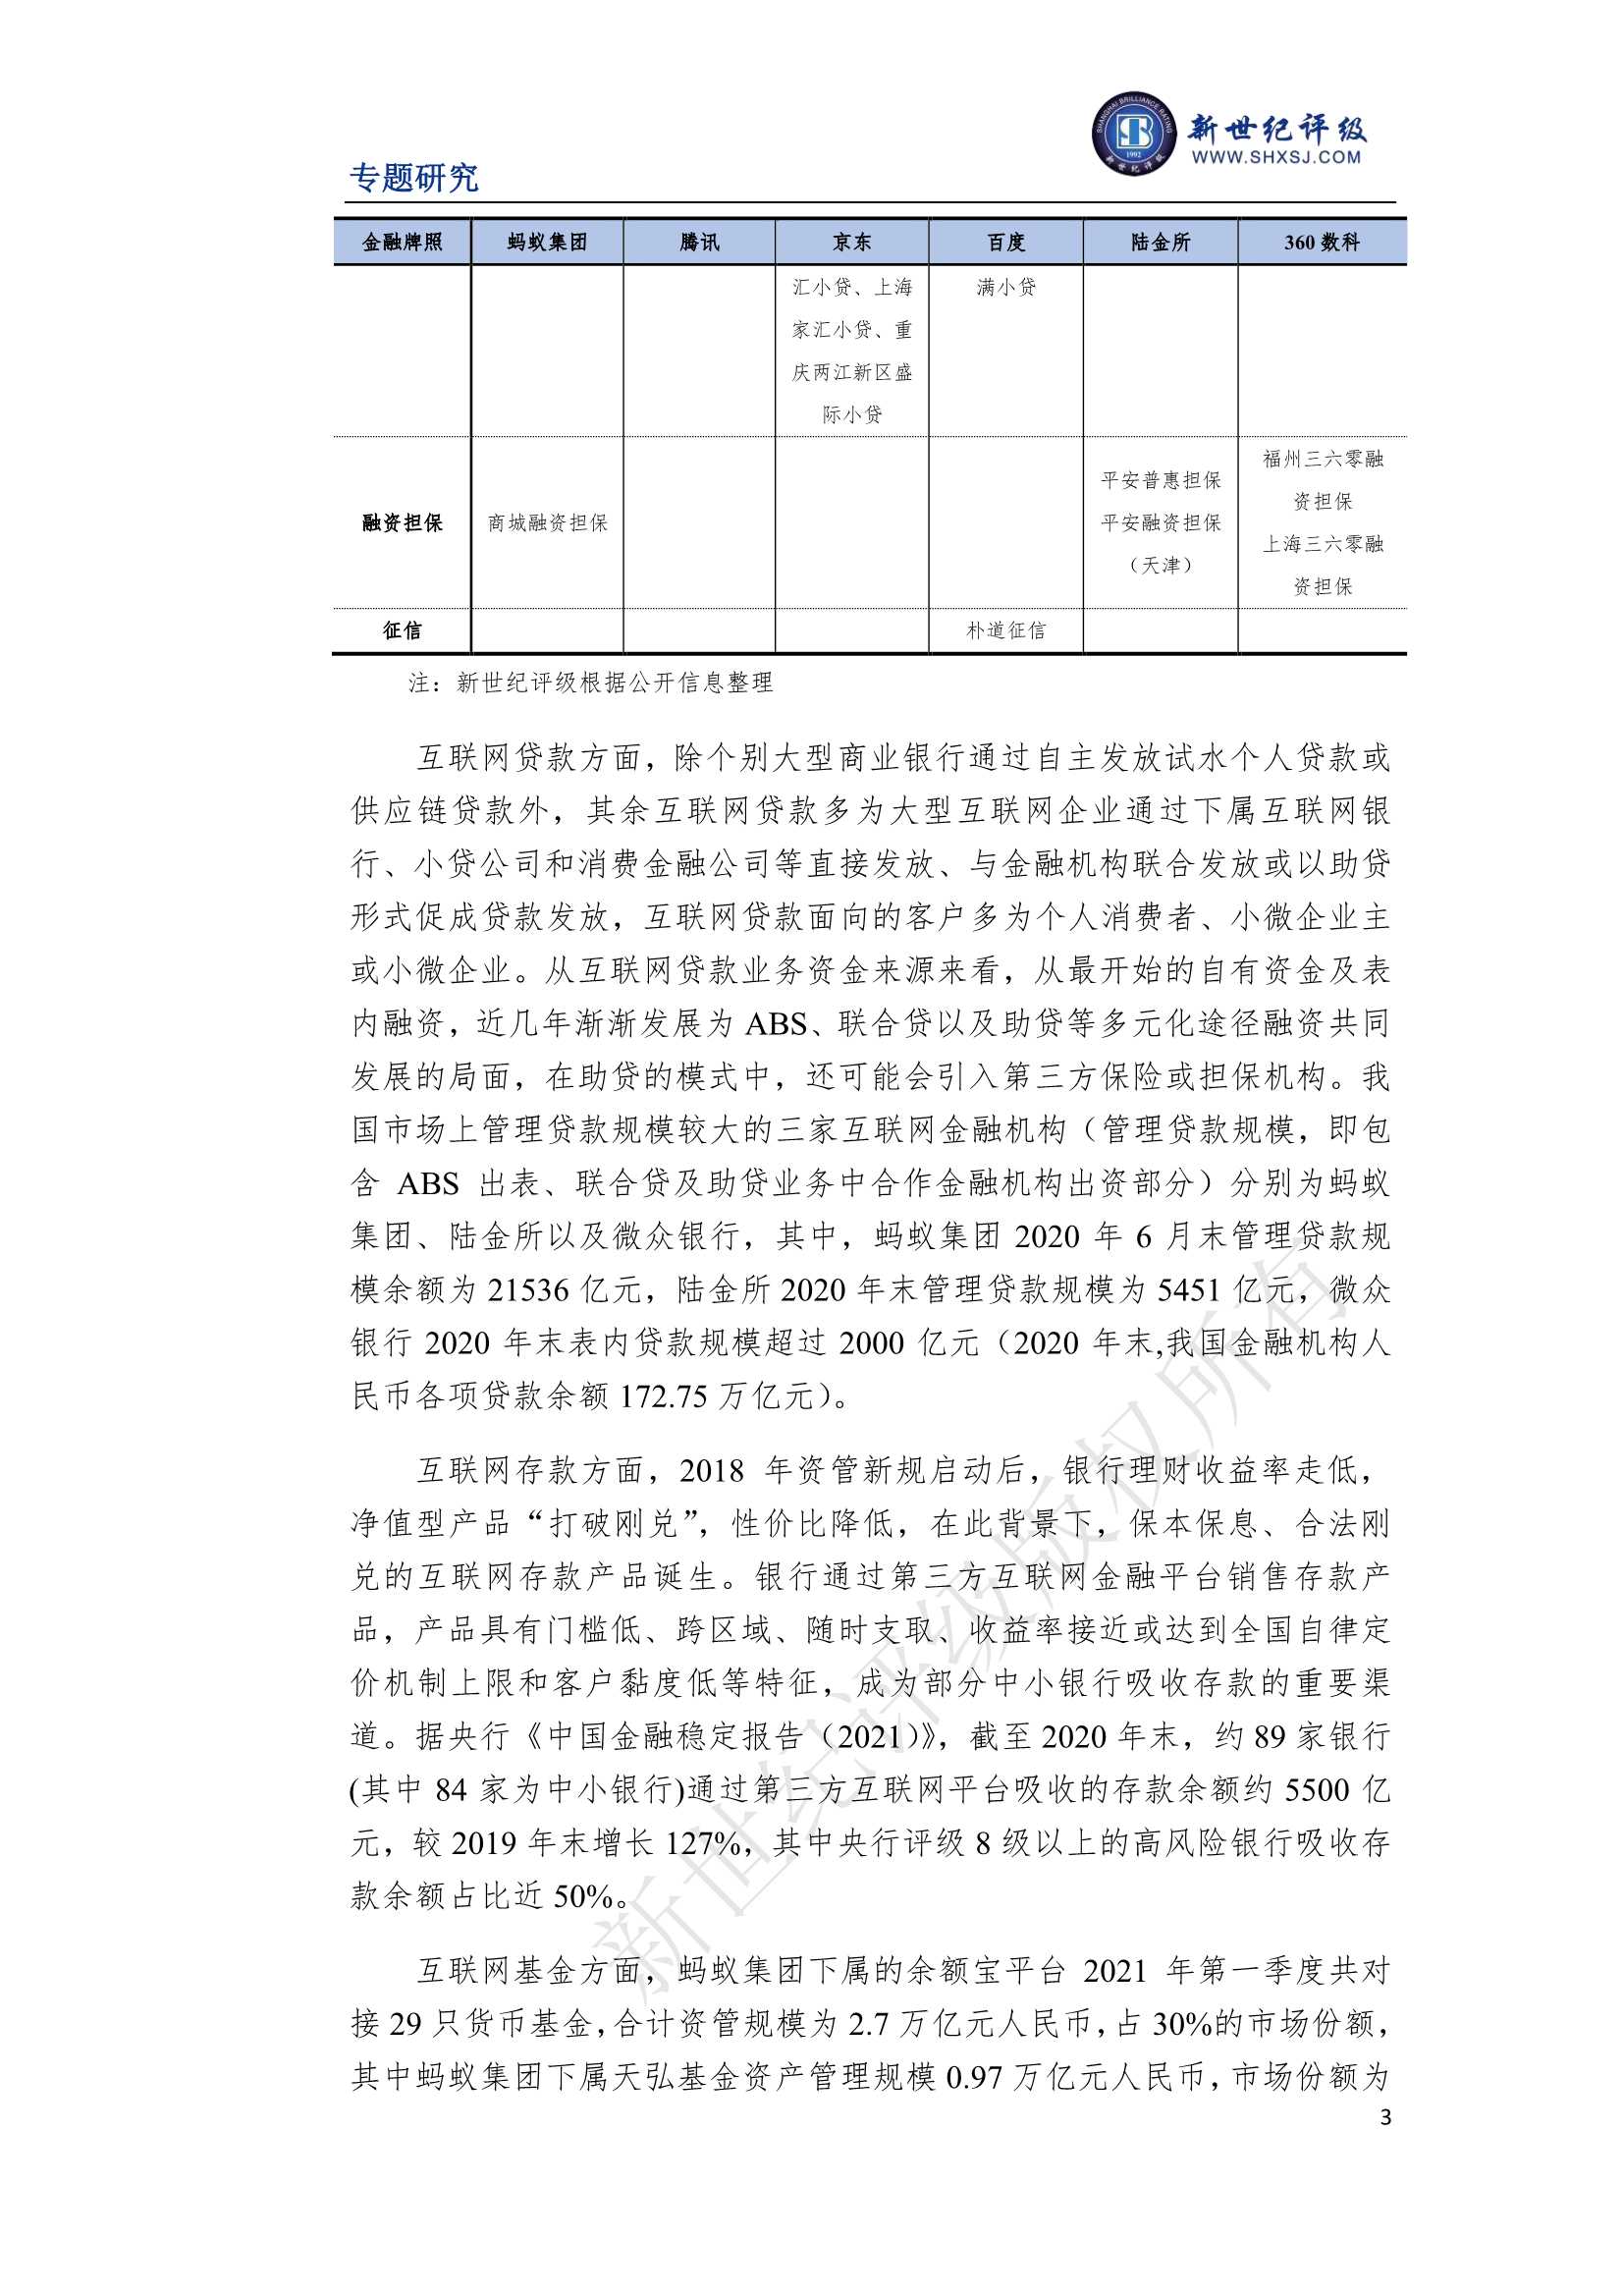 上海新世纪资信评估-互联网金融监管政策变化与影响分析-2021.12-20页